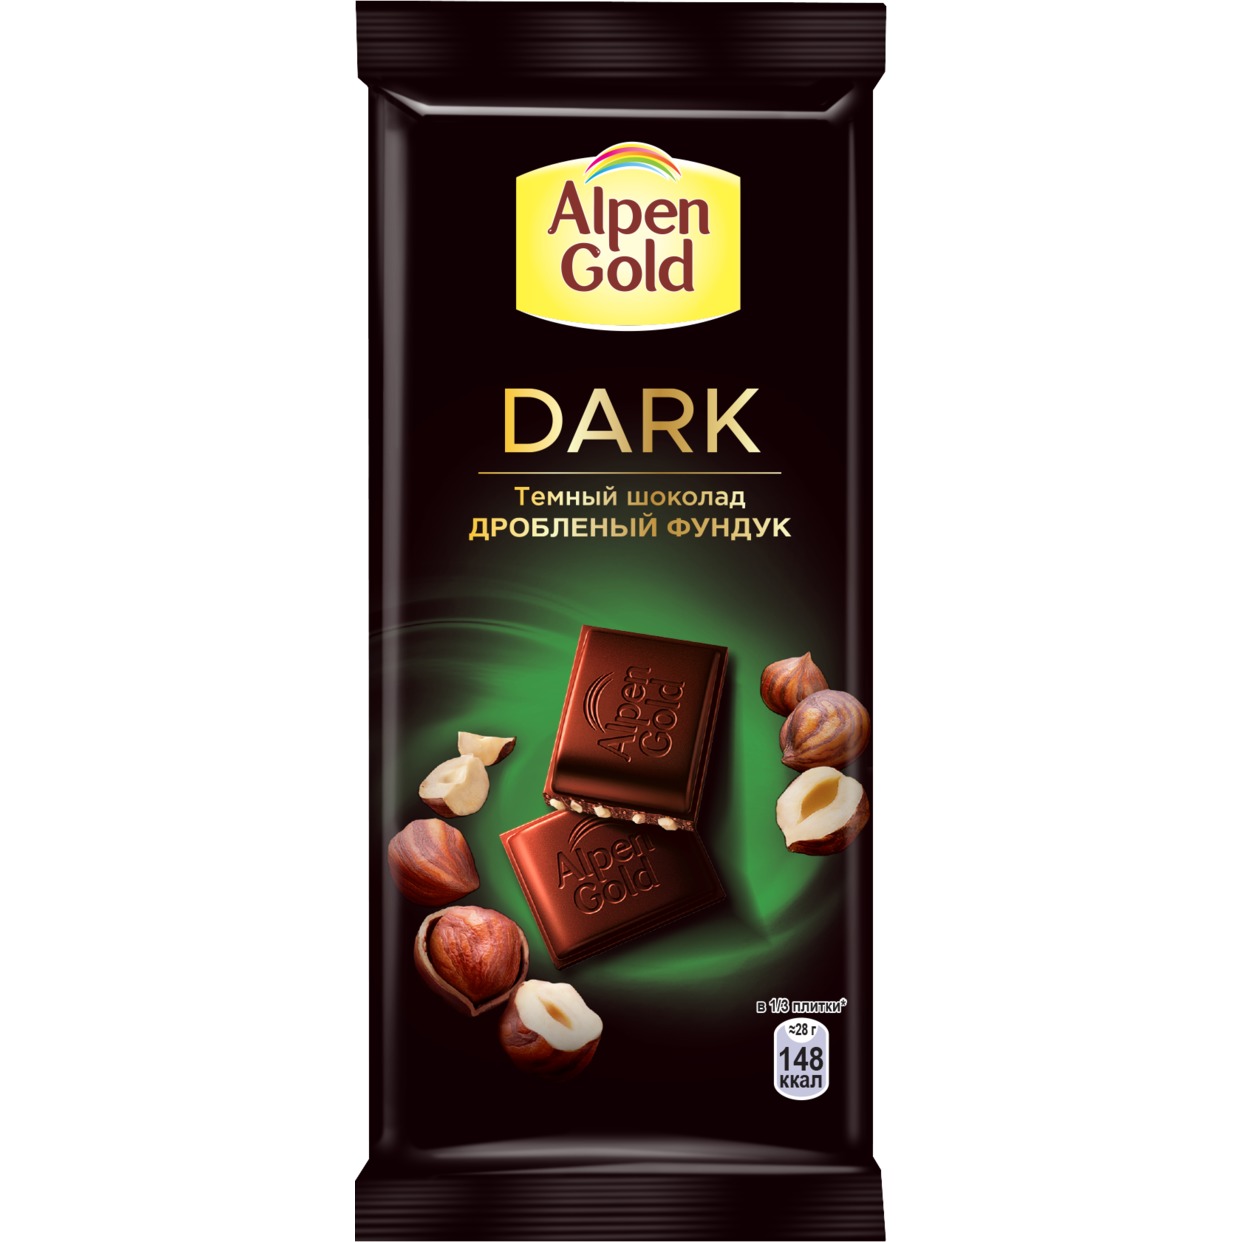 Шоколад Alpen Gold, темный с фундуком, 90 г по акции в Пятерочке